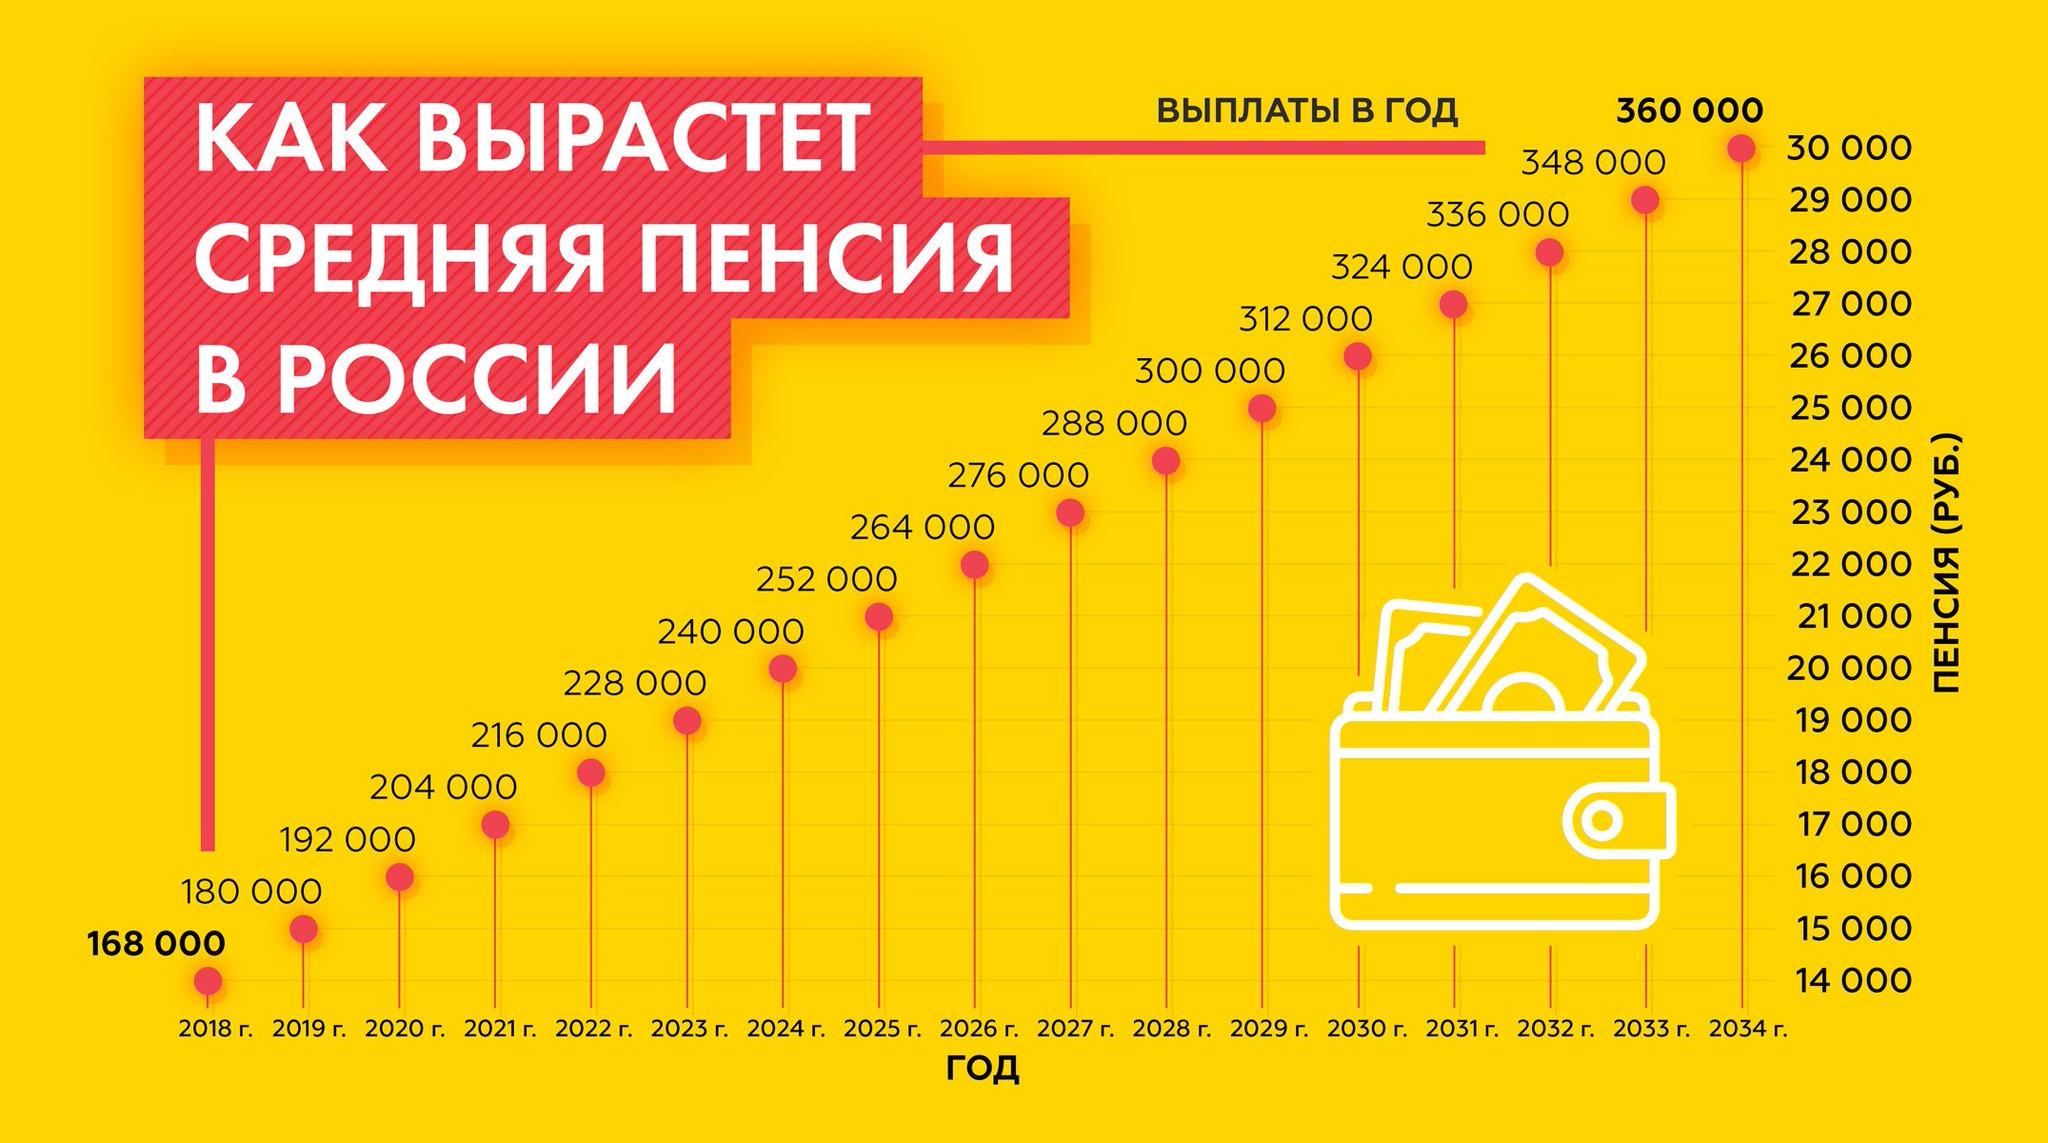 Повышение мрот в 2025 году. Средняя пенсия в России в 2021. Средняя пенсия в России в 2021 году. Средняя пенсия в России в 2022 году. Средняя пенсия в РФ по годам.